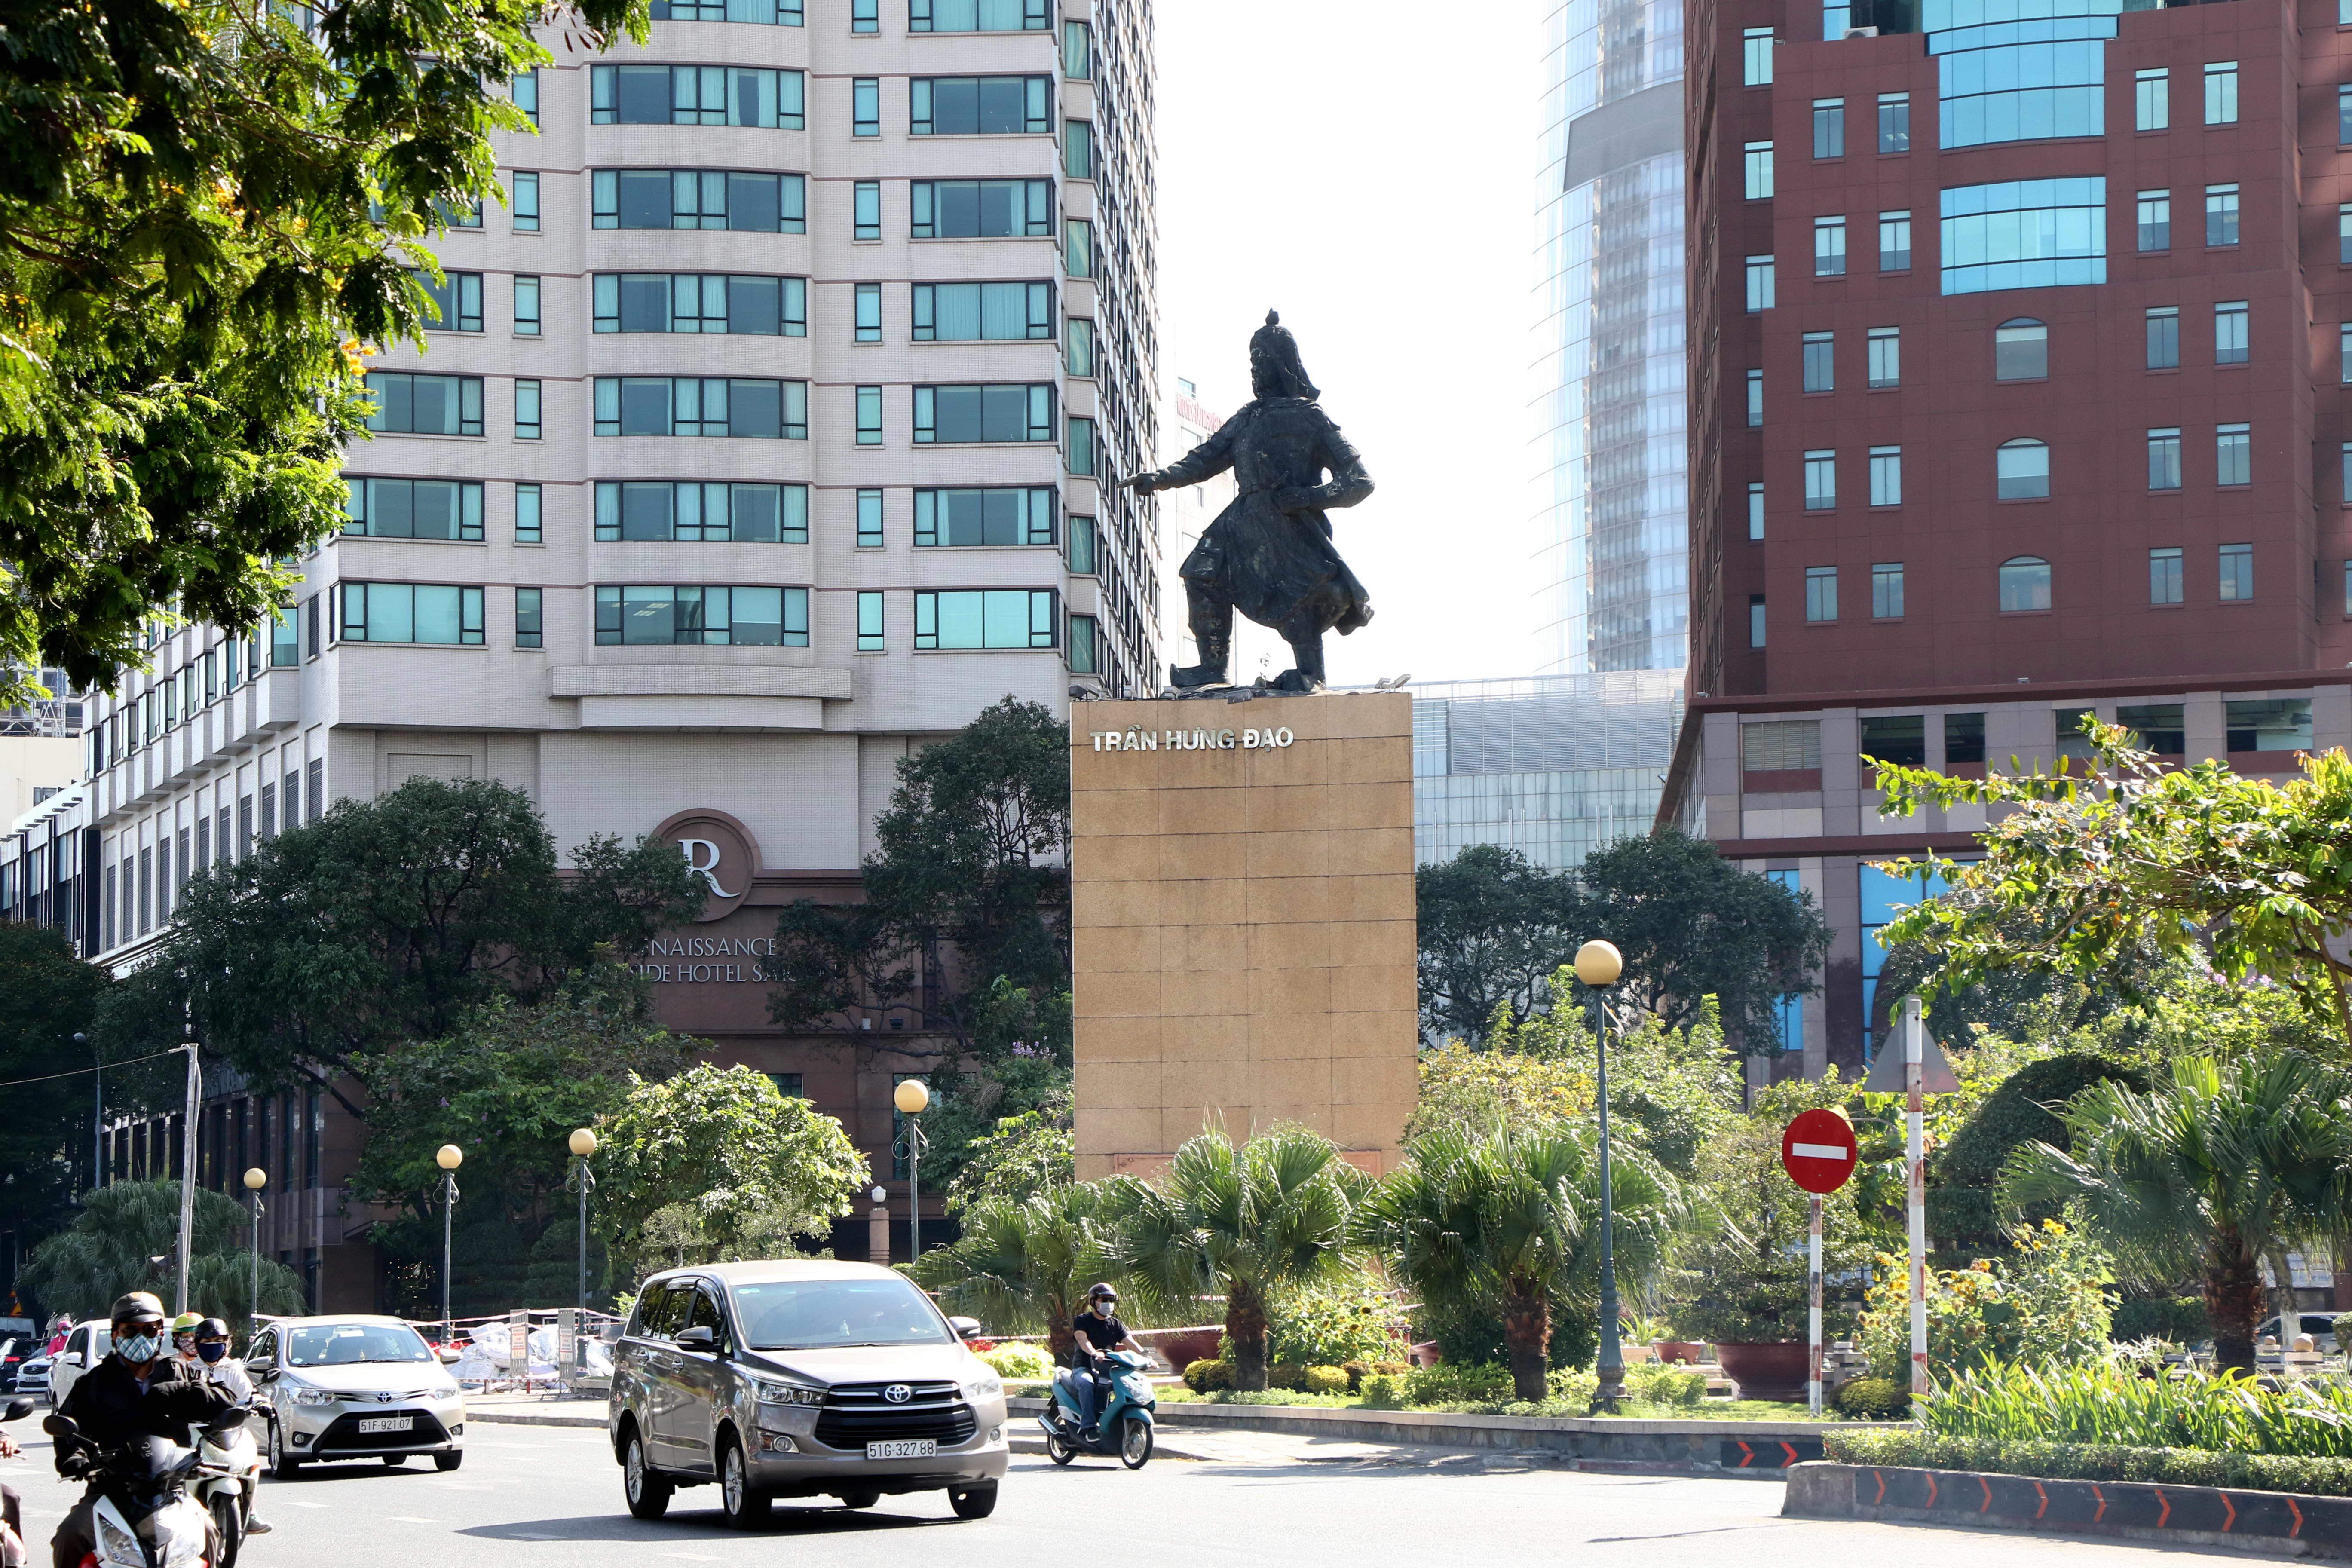 Tượng Trần Hưng Đạo ở Công trường Mê Linh, xung quanh là những tòa nhà cao tầng nhìn ra bến Bạch Đằng, sông Sài Gòn